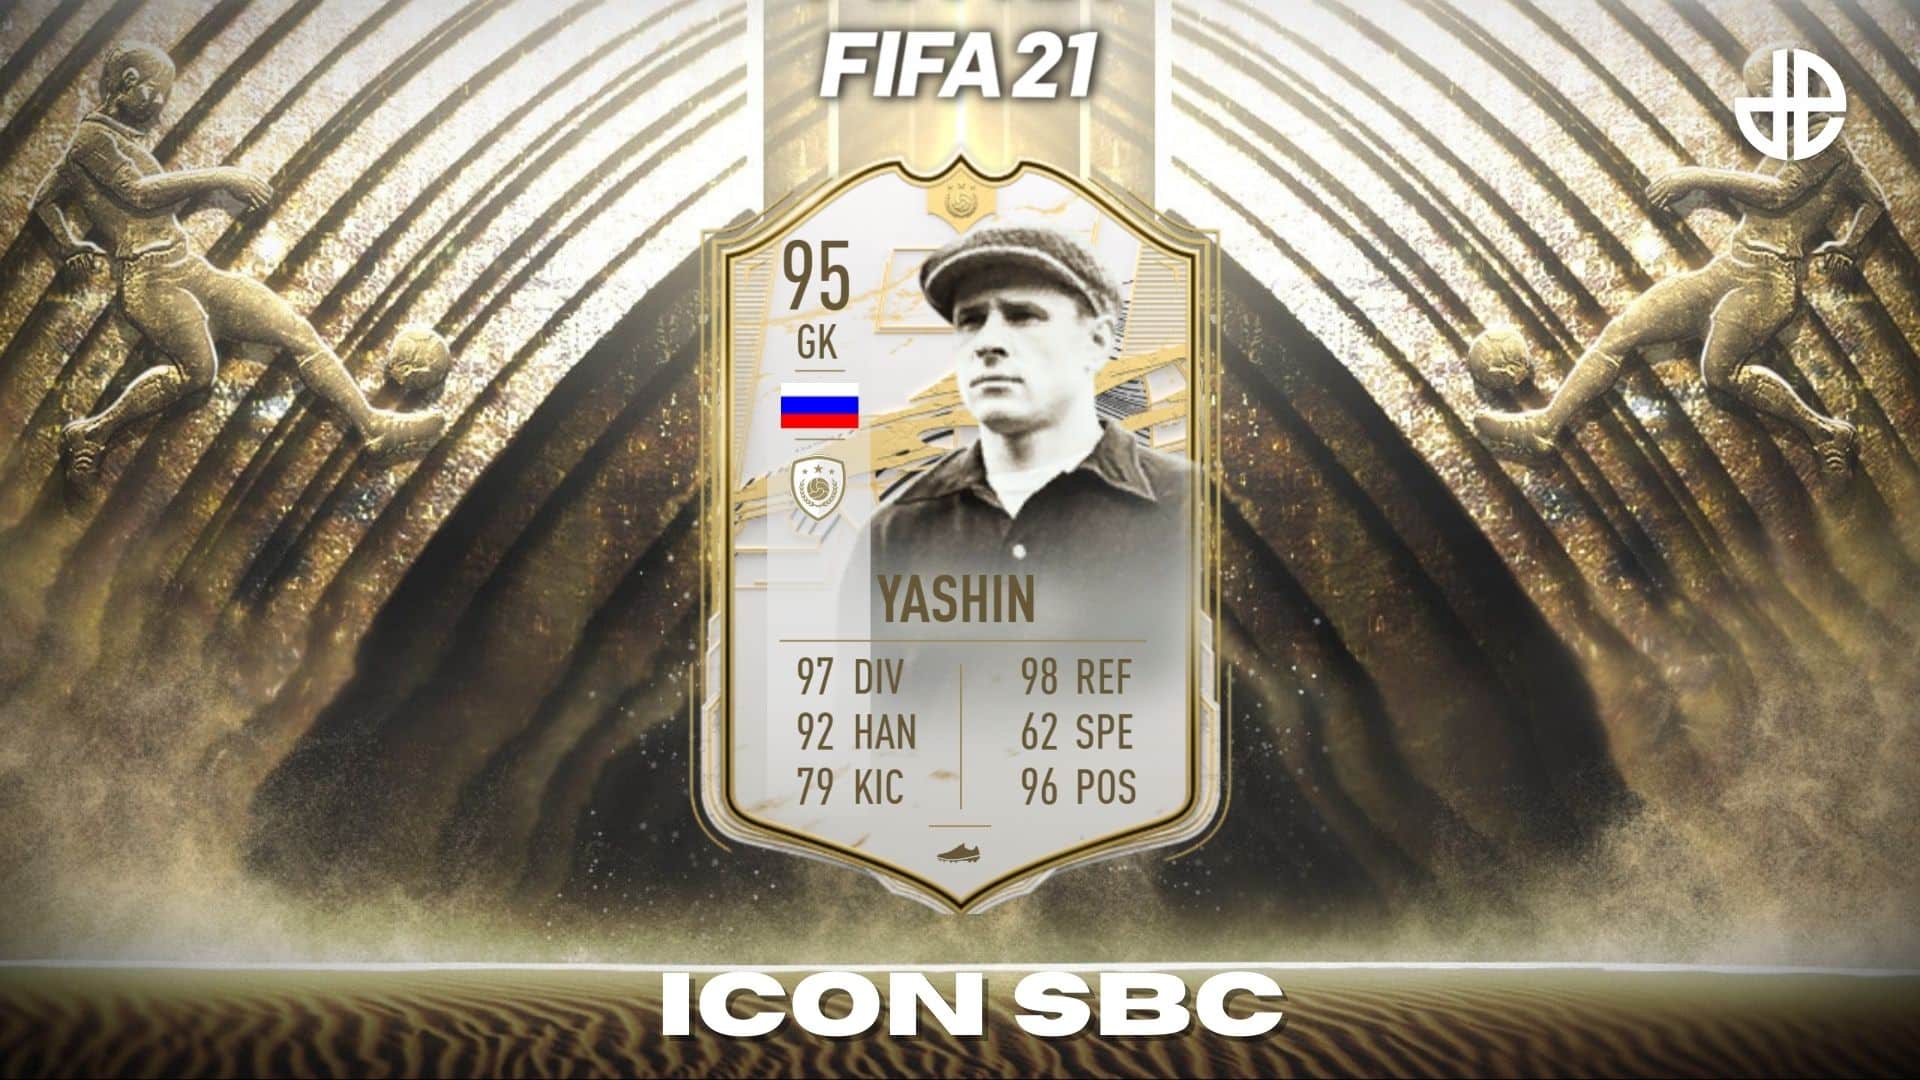 Lev Yashin Prime ICON SBC FIFA 21